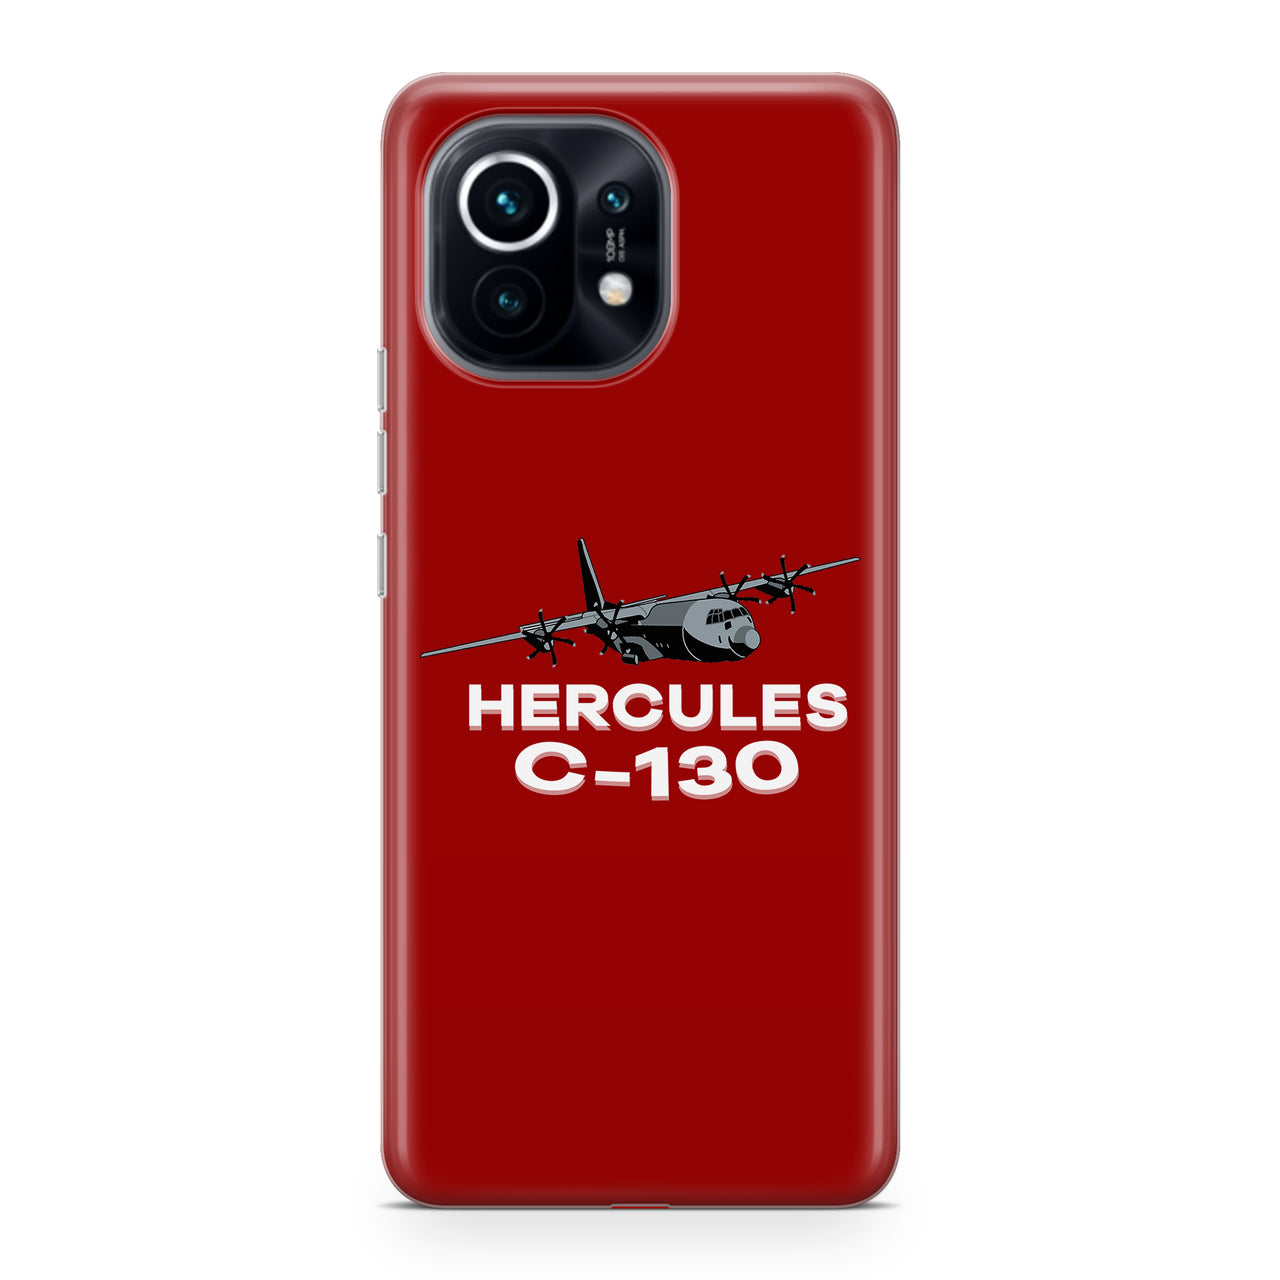 The Hercules C130 Designed Xiaomi Cases